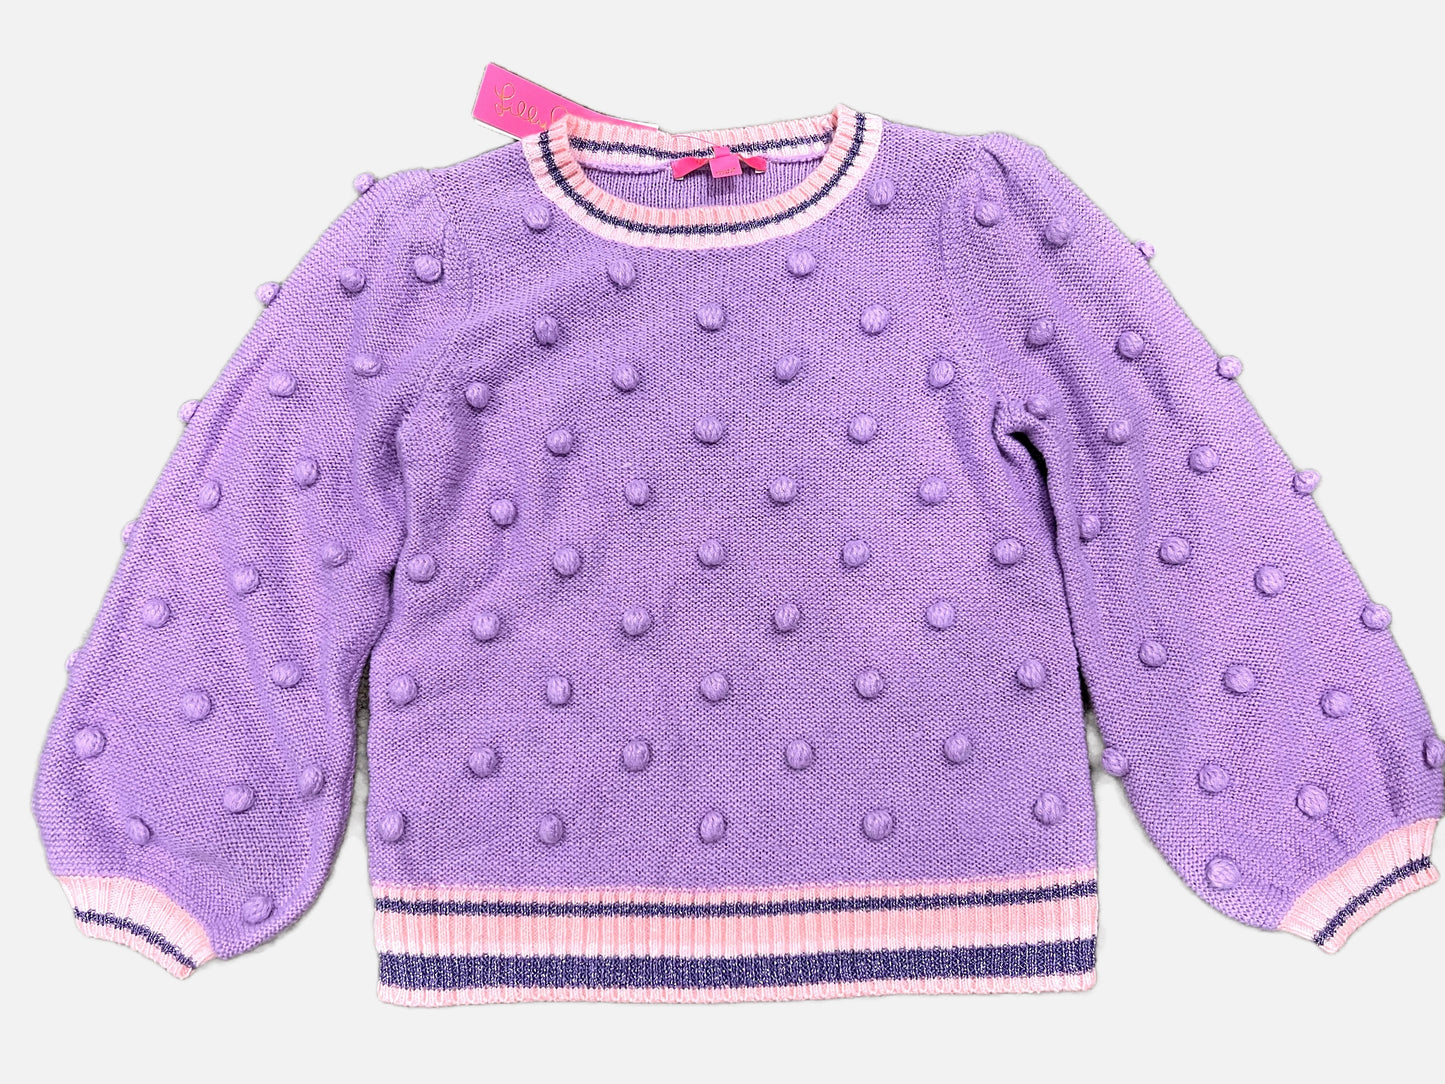 Lilly Pulitzer women’s Pom Pom sweater, small, NWT